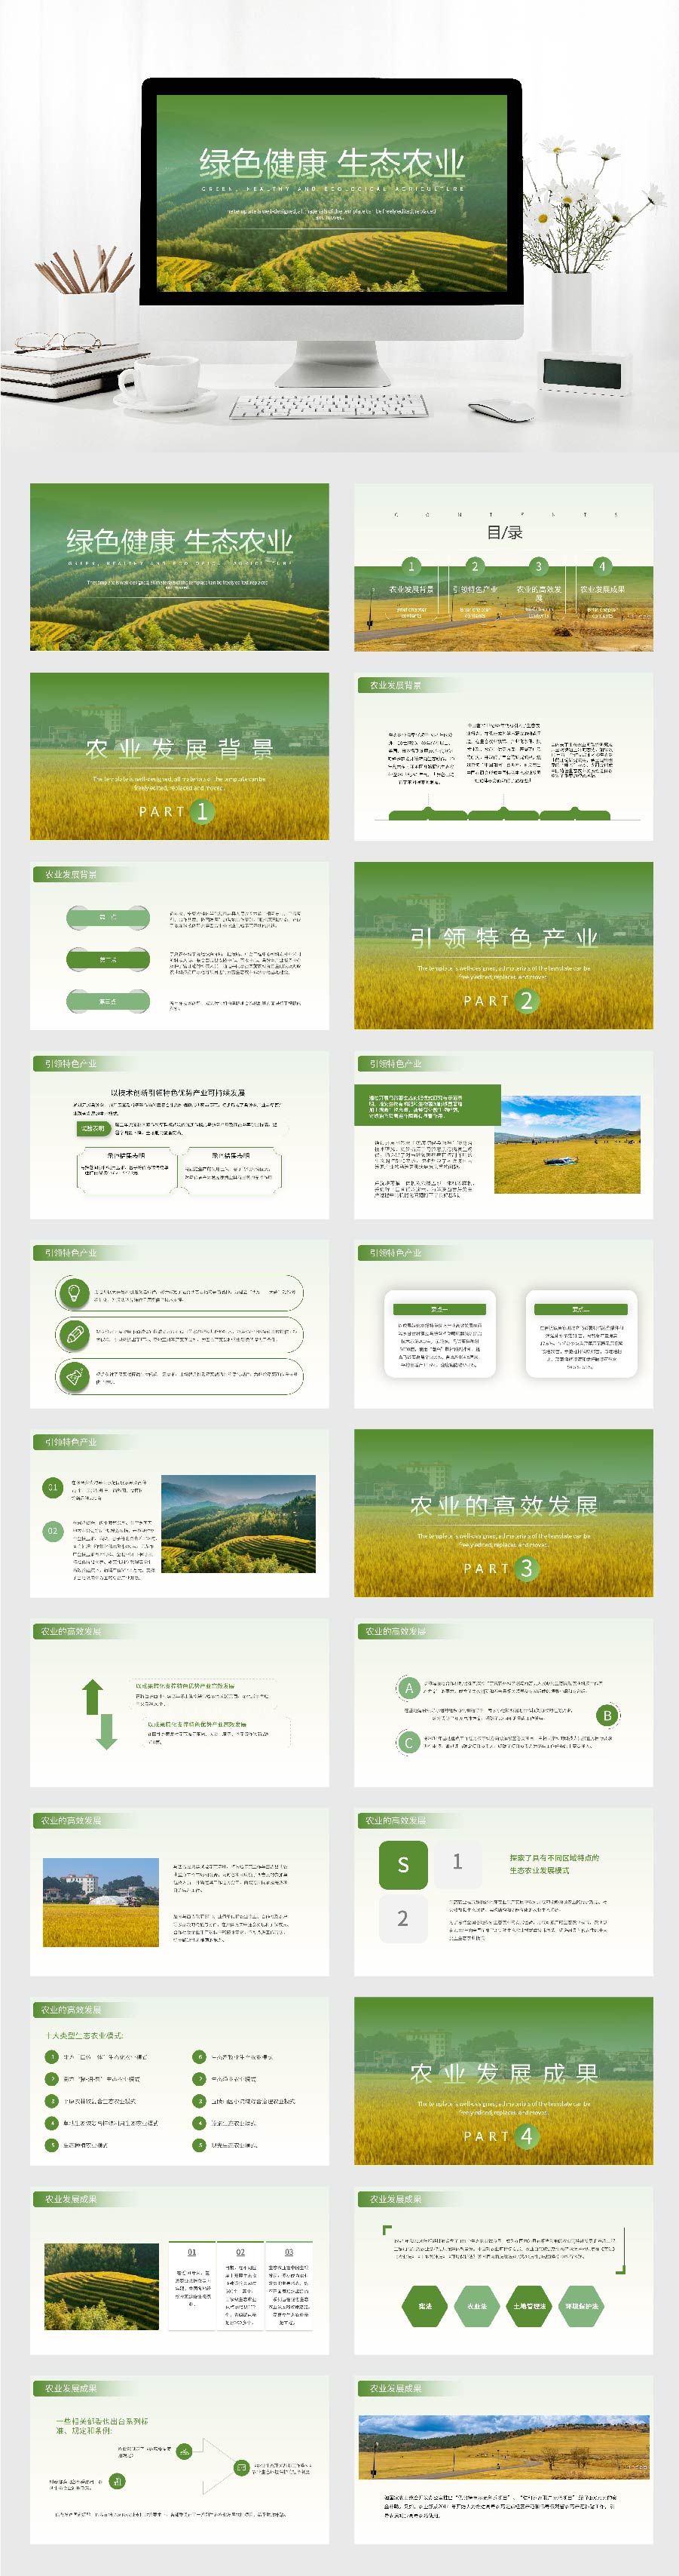 绿色健康生态农业PPT模板